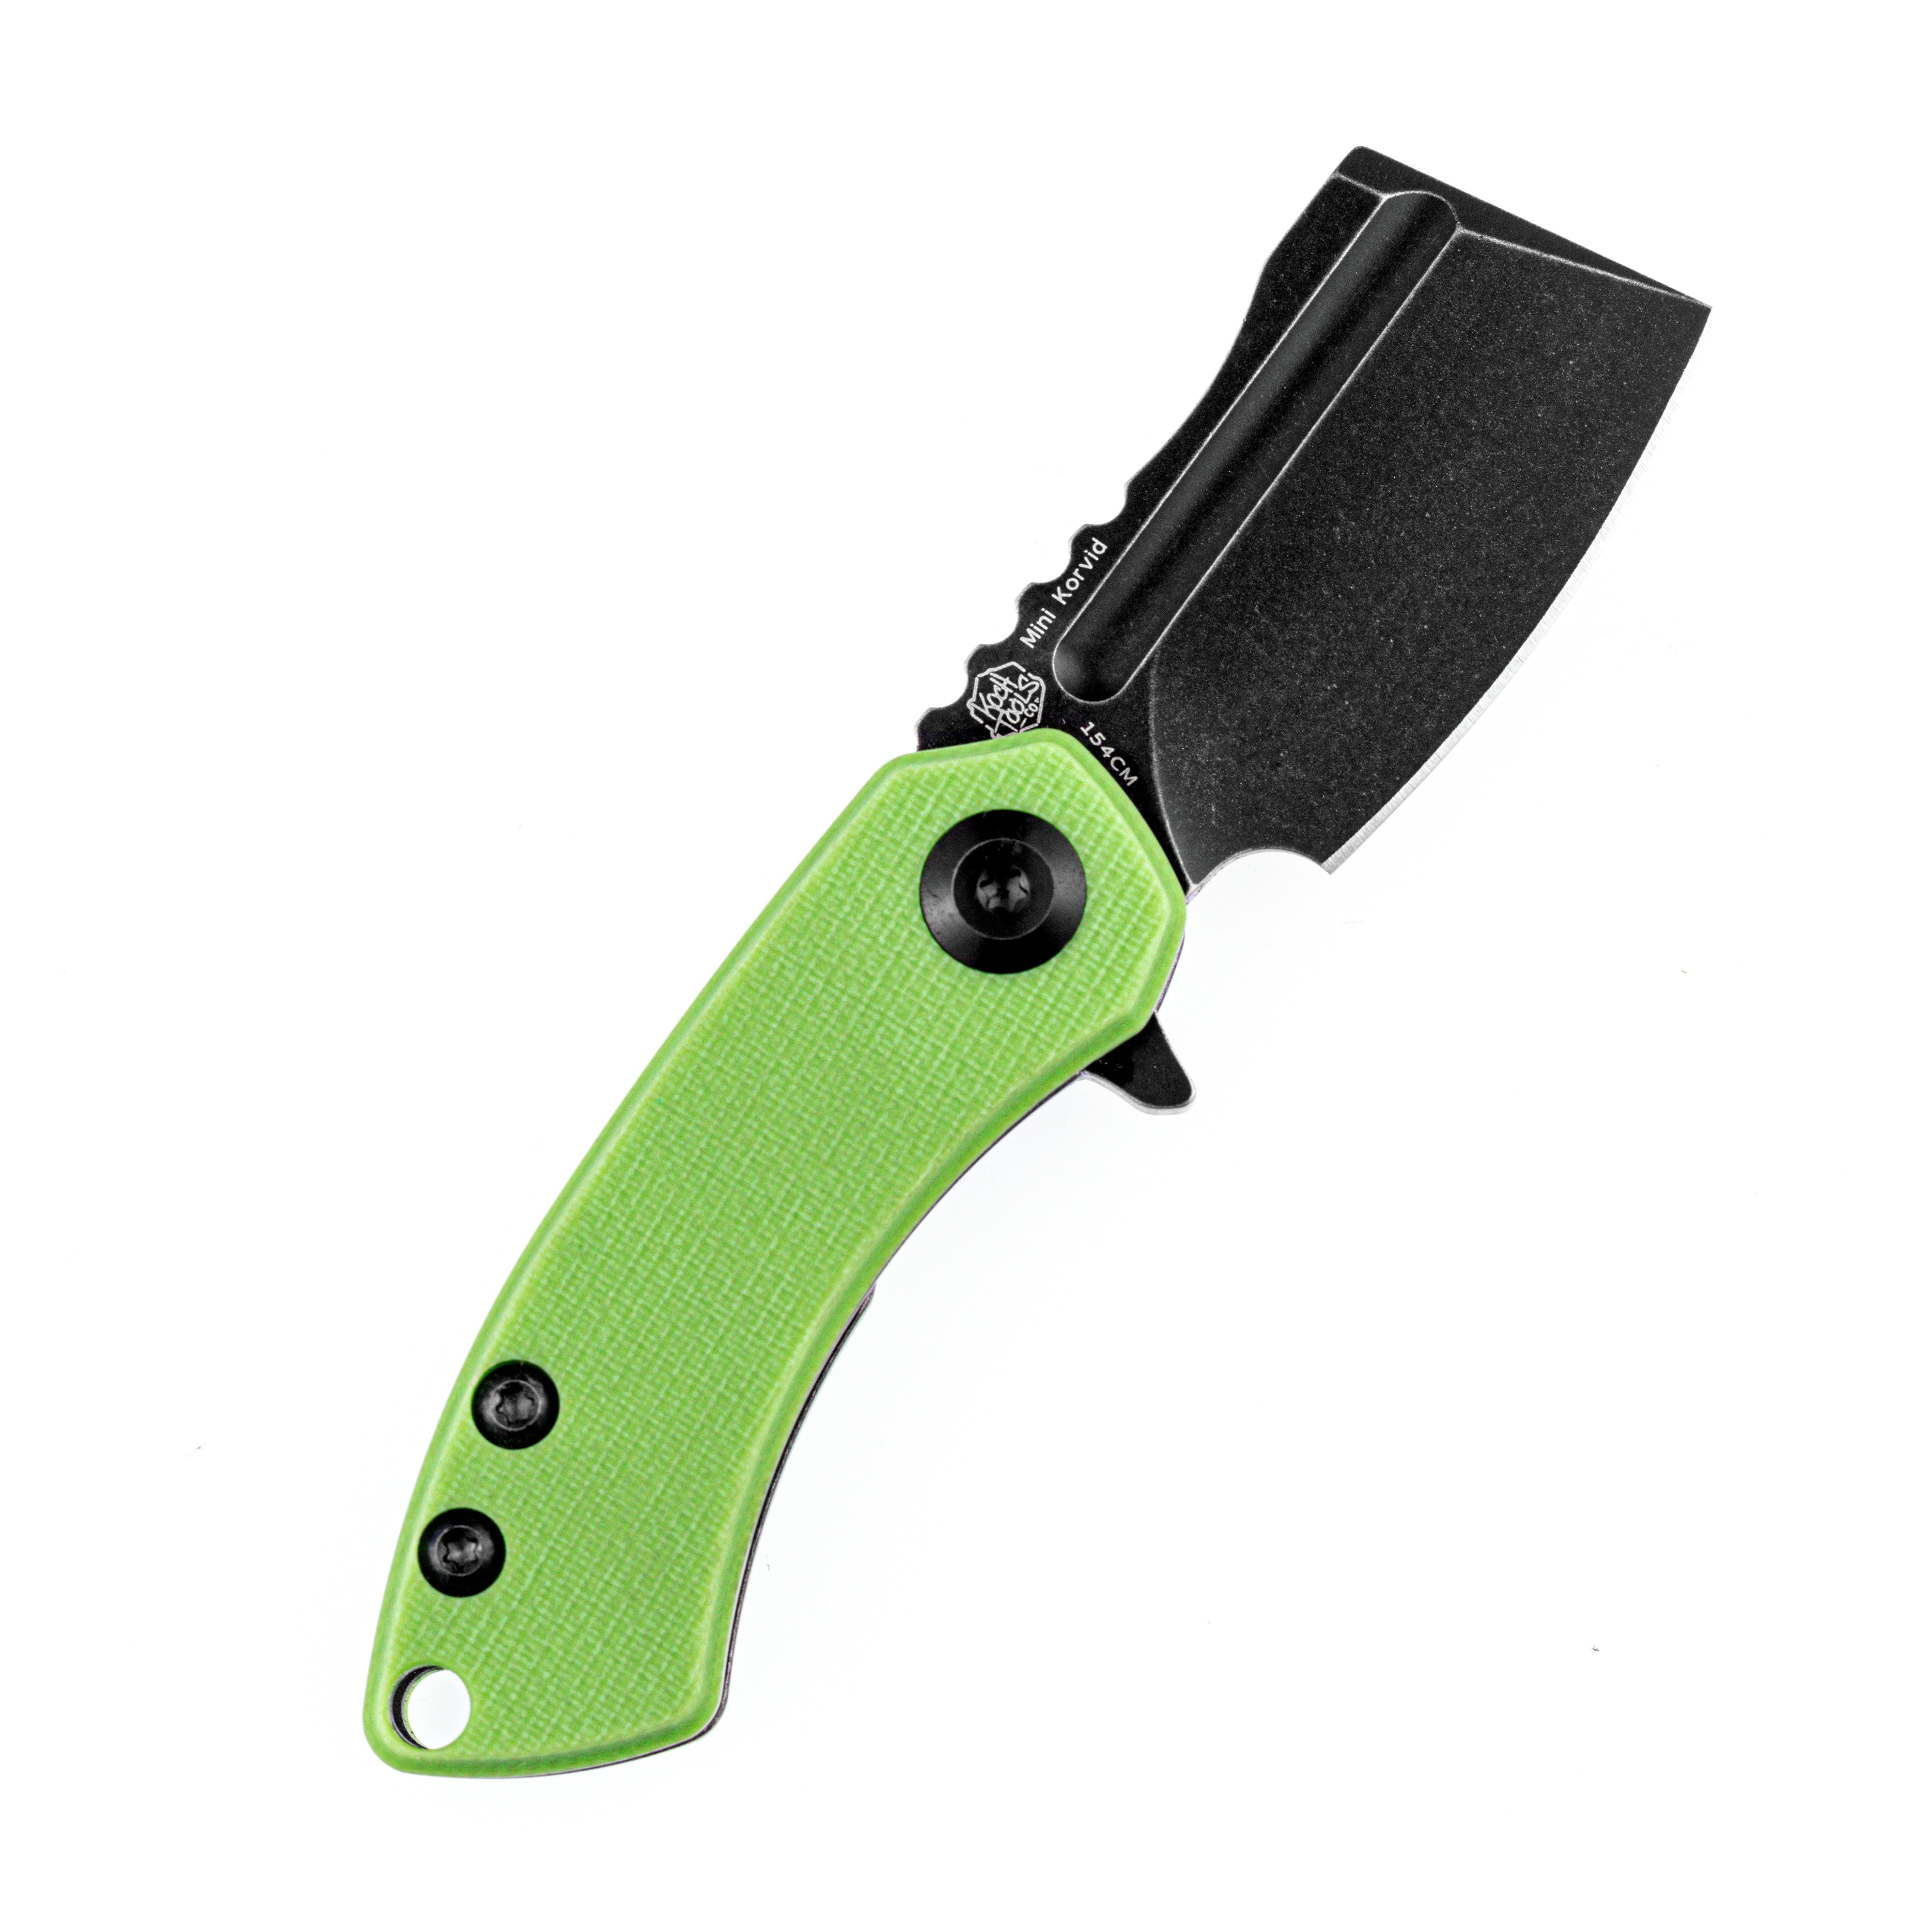 Kansept 刀具 T3030A8 迷你 Korvid 154 厘米刀片绿色 G10 手柄内衬锁 Edc 刀具